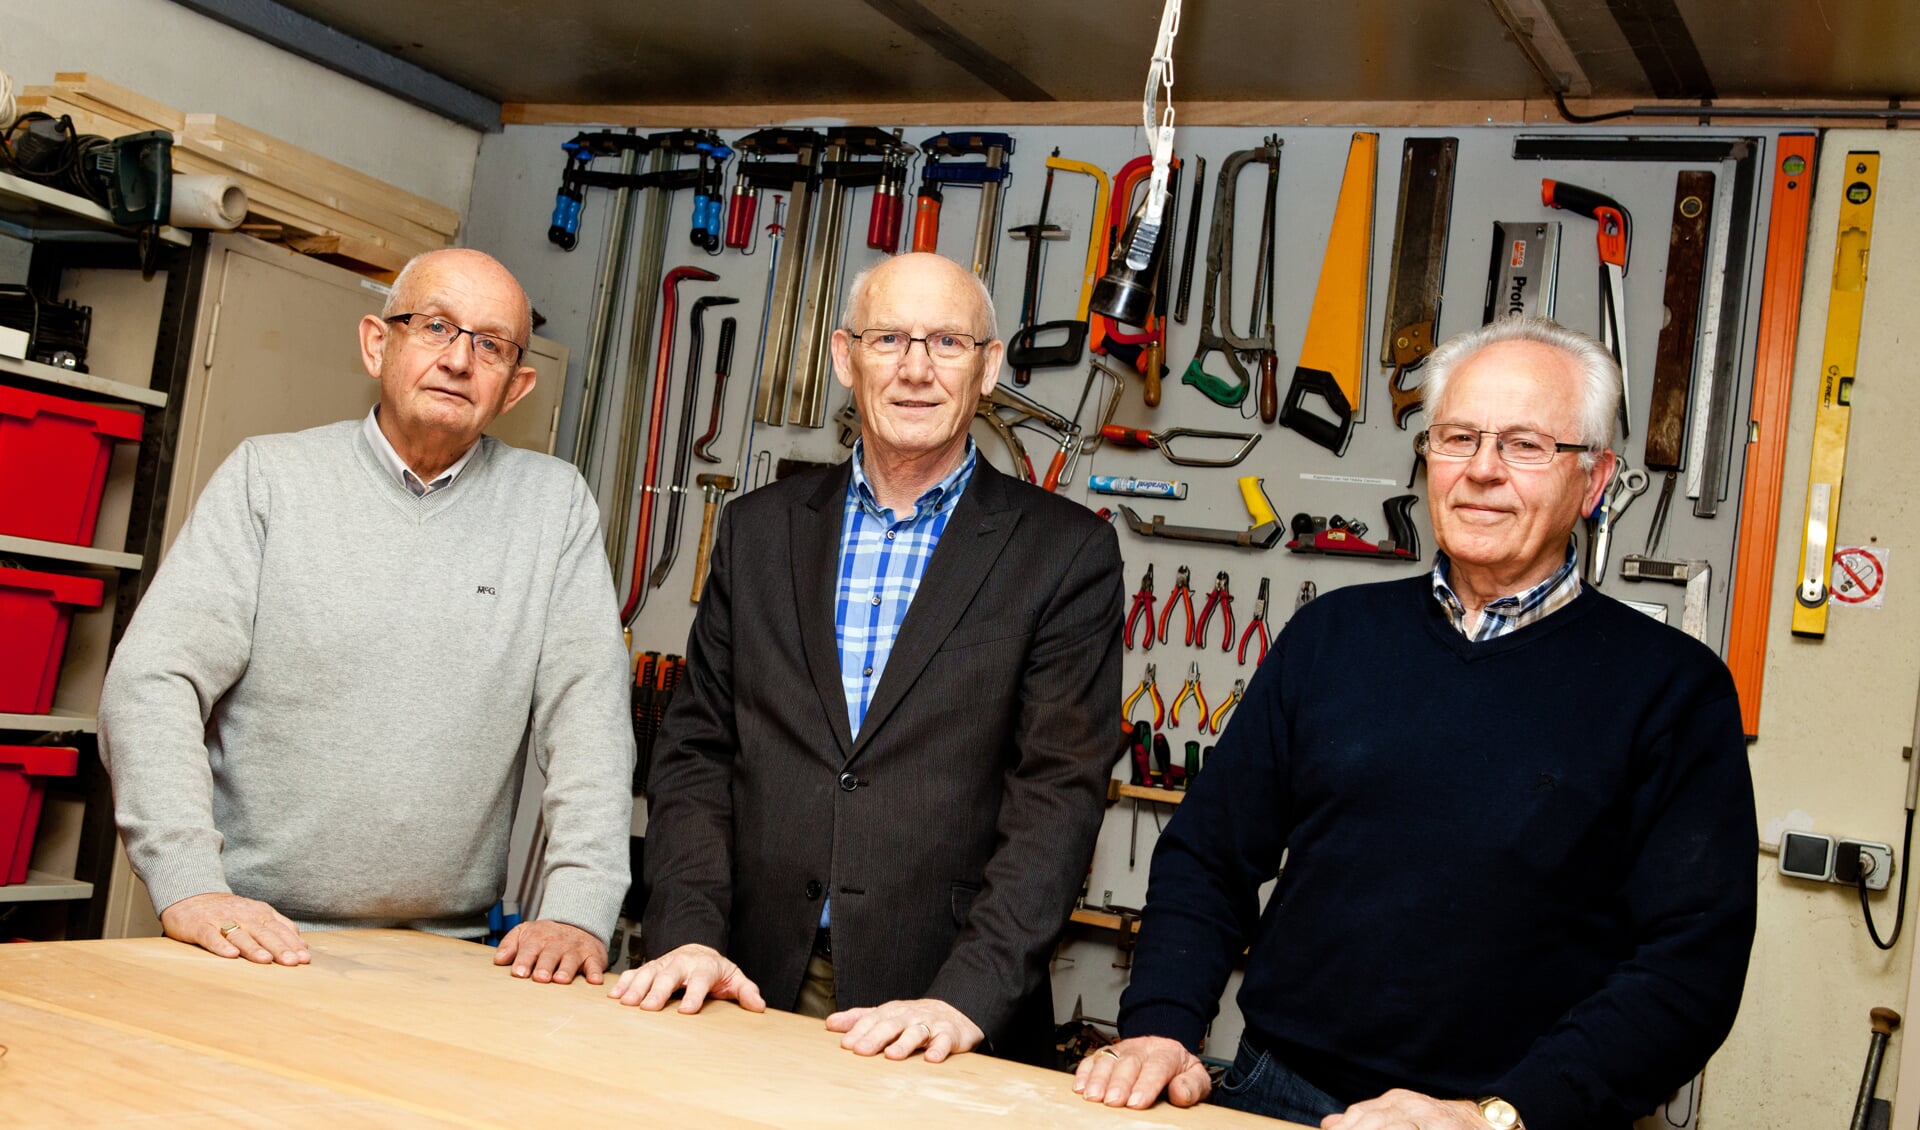 V.l.n.r.: Hans van Baal, Ton Ermers en Theo Gerrits van het Senioren Hobby Centrum Mill. (foto: Diana Derks)